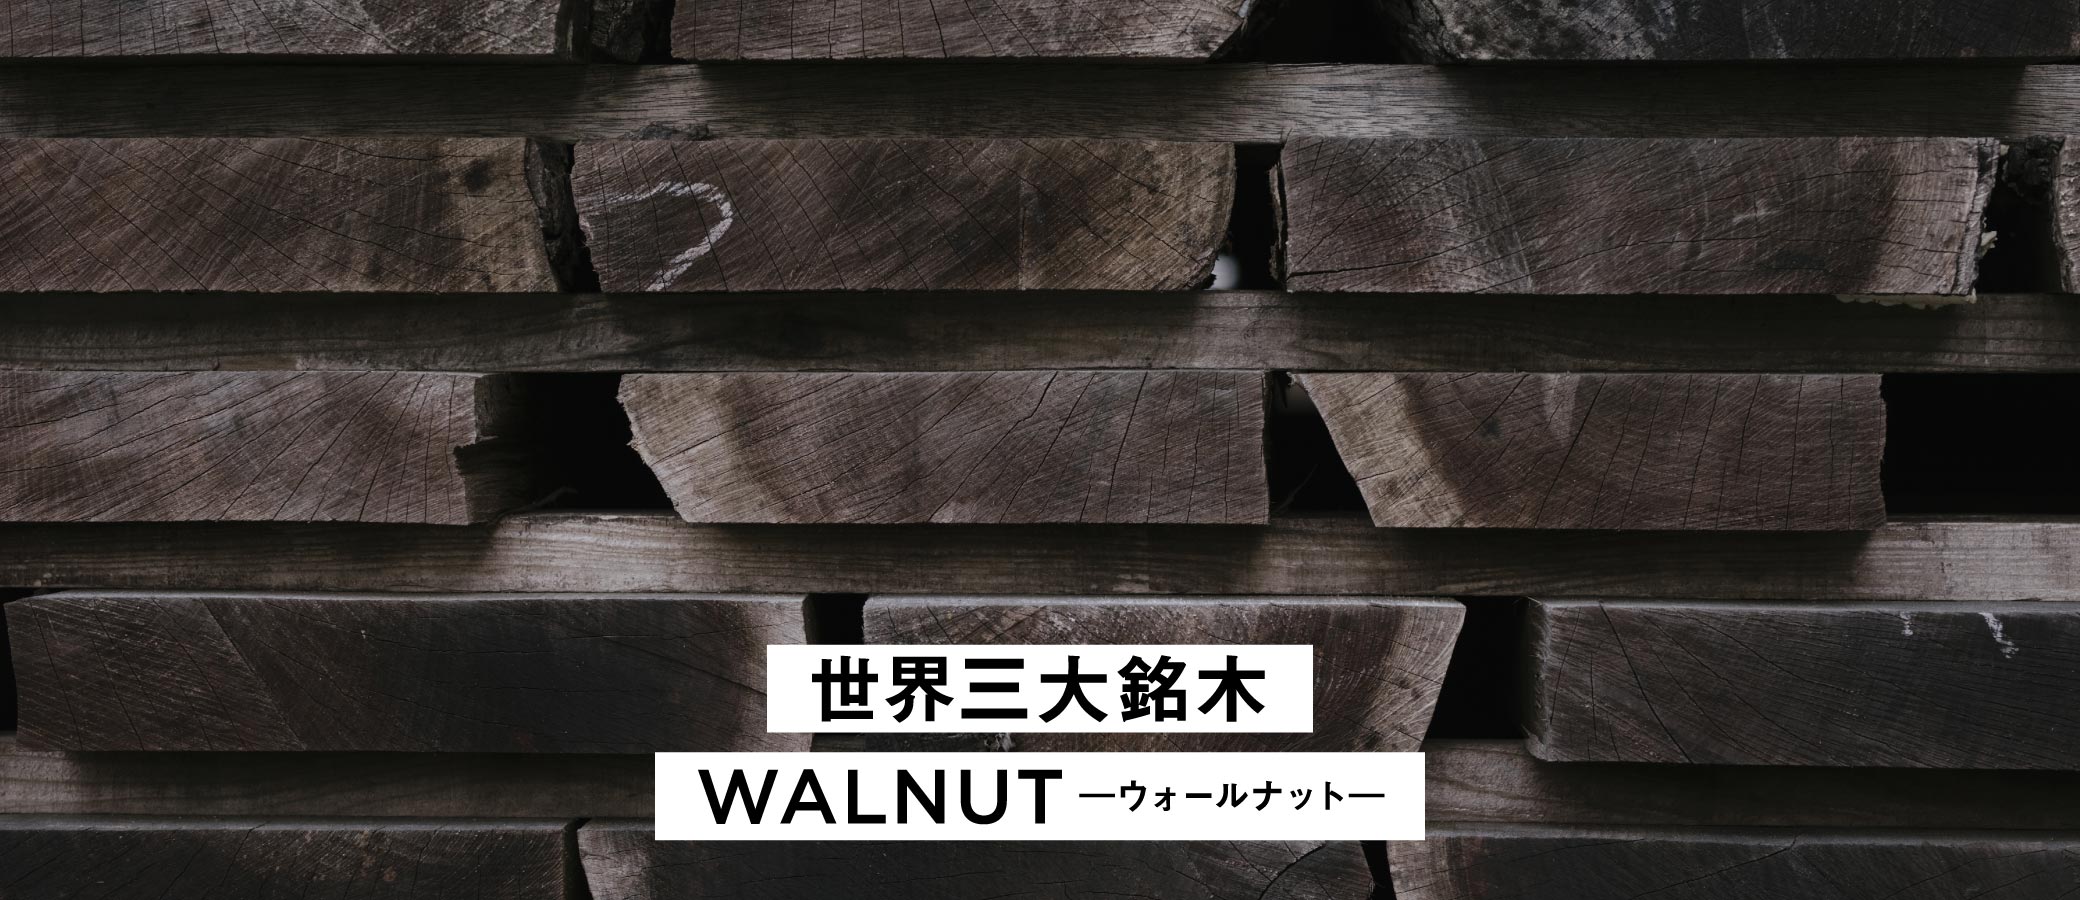 世界三大銘木のひとつであるウォールナット。SOLID名古屋店の家具は、無垢のウォールナットを贅沢に使用しています。